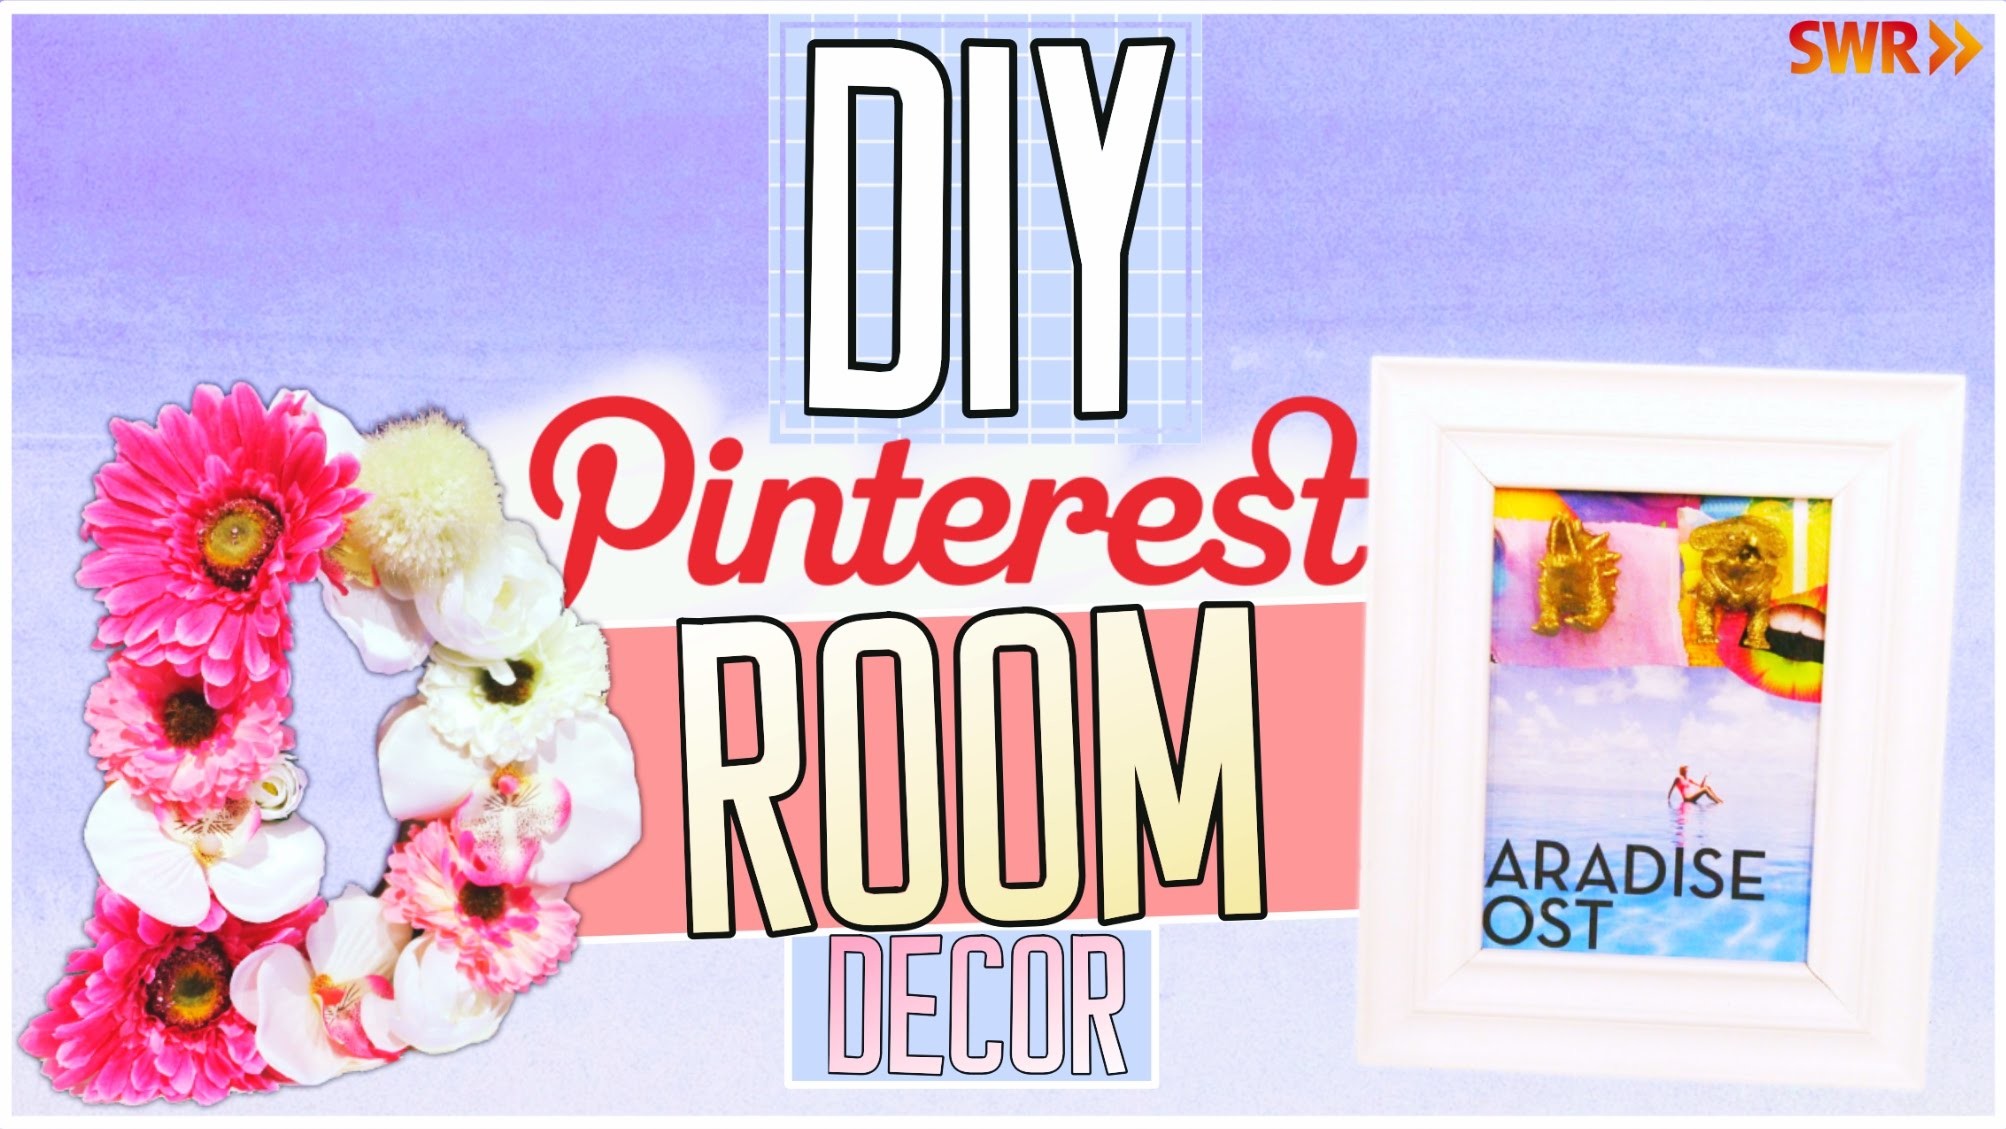 DIY Pinterest Room Decor Ideen! Einfach, schnell & günstig!